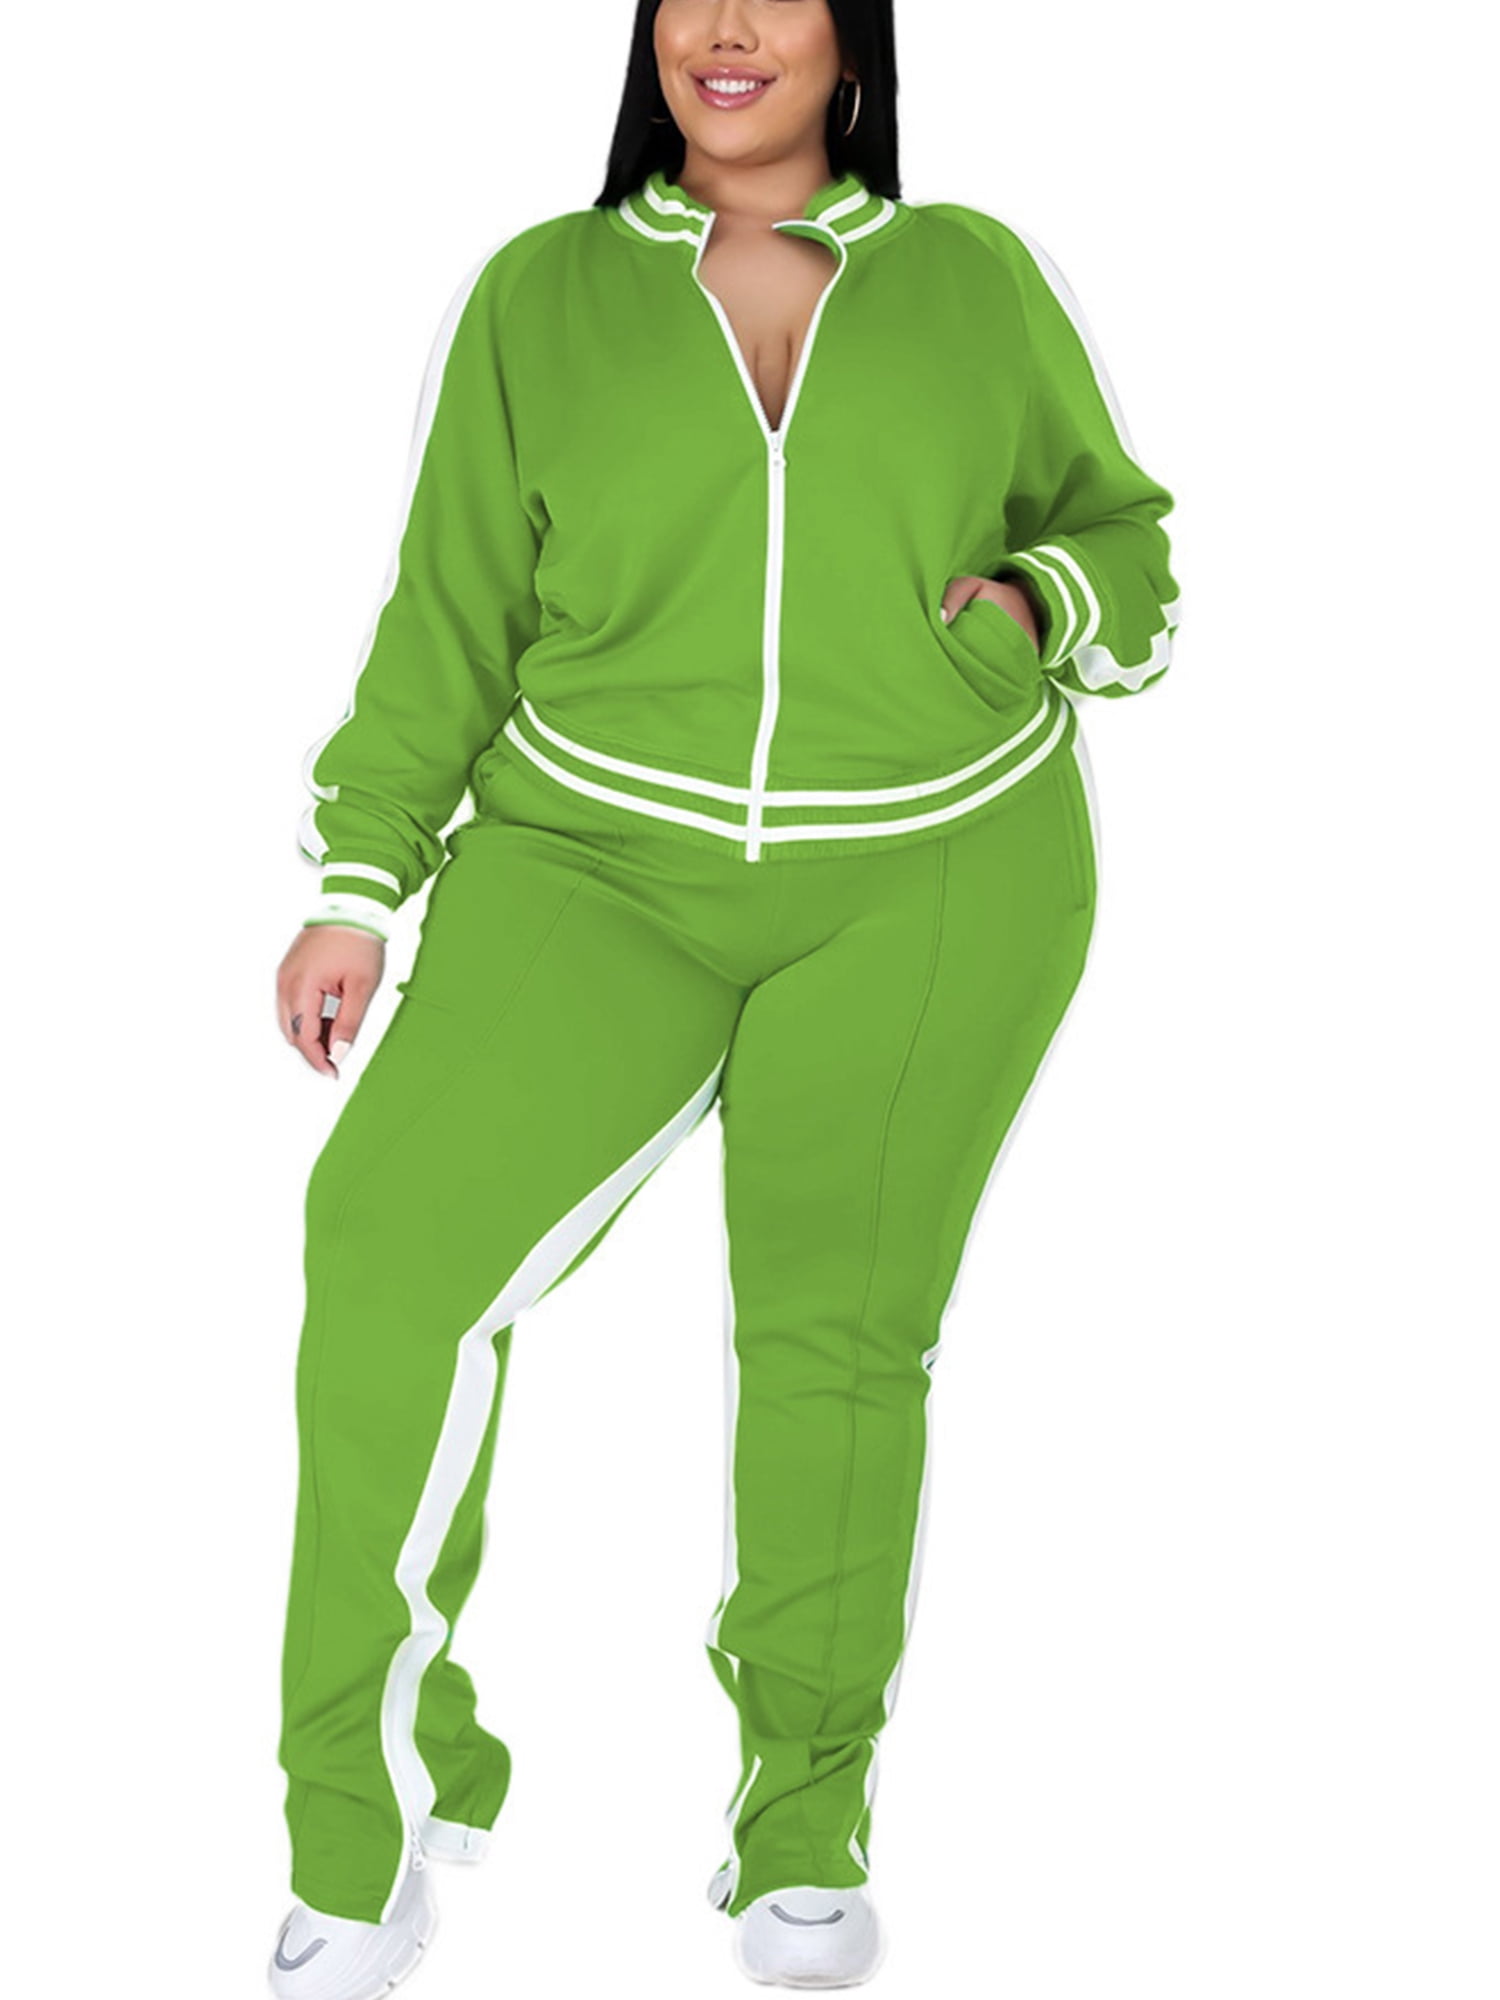 Avamo Plus Size Women Casual Jogger Suit 2 Piece Tracksuit Crewneck Long  Sleeve Tops Long Sweatpants Outfits Lounge Sets Green XXXL 